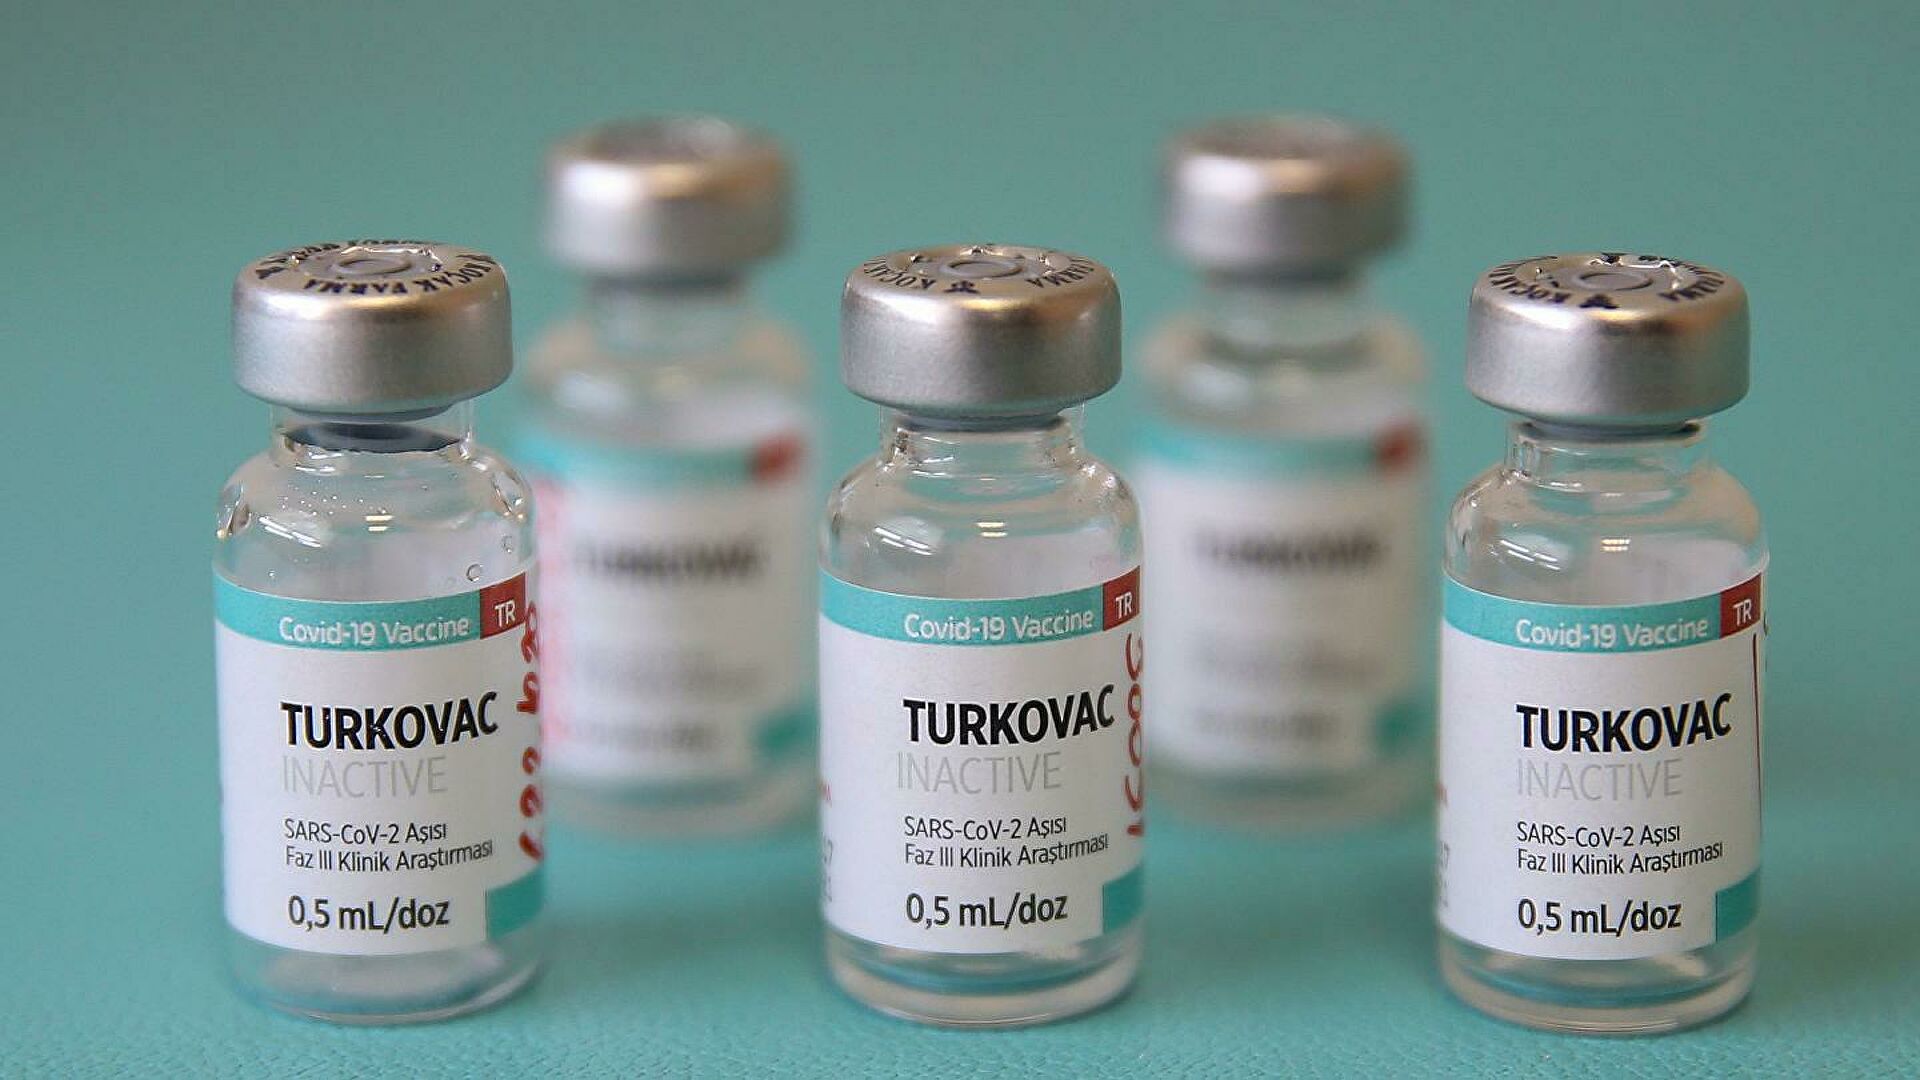 TURKOVAC Aşısı Artık Uygulanmaya Başlıyor!